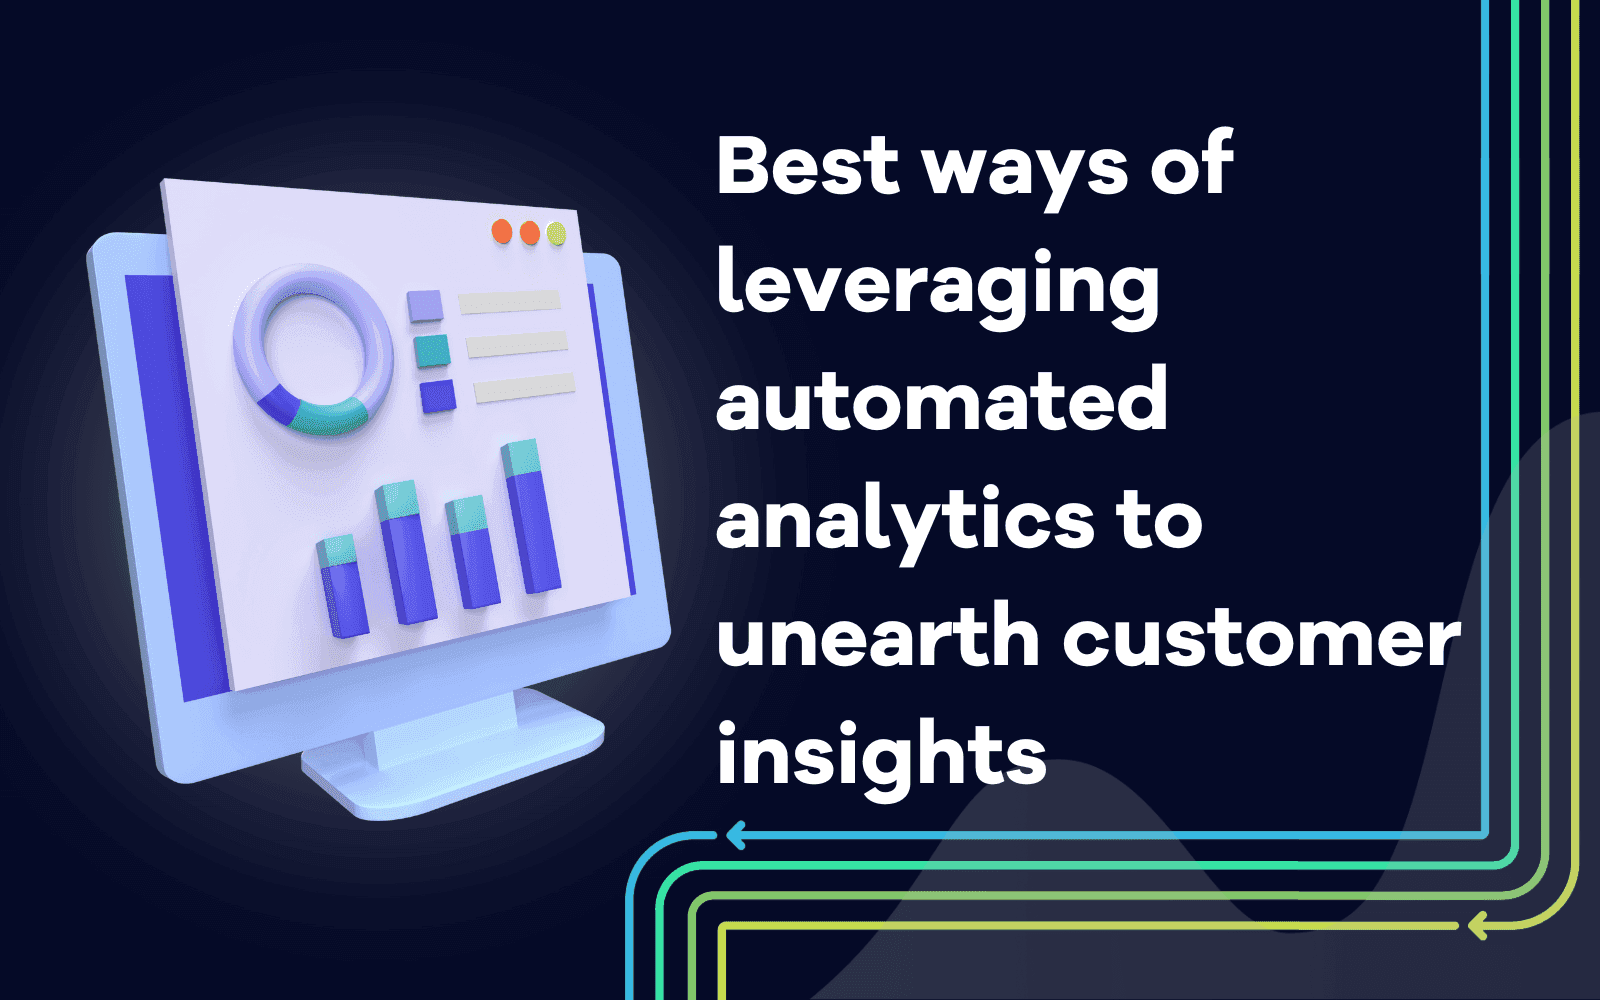 De 6 beste måtene å utnytte automatiserte analyser på for å avdekke kundeinnsikt